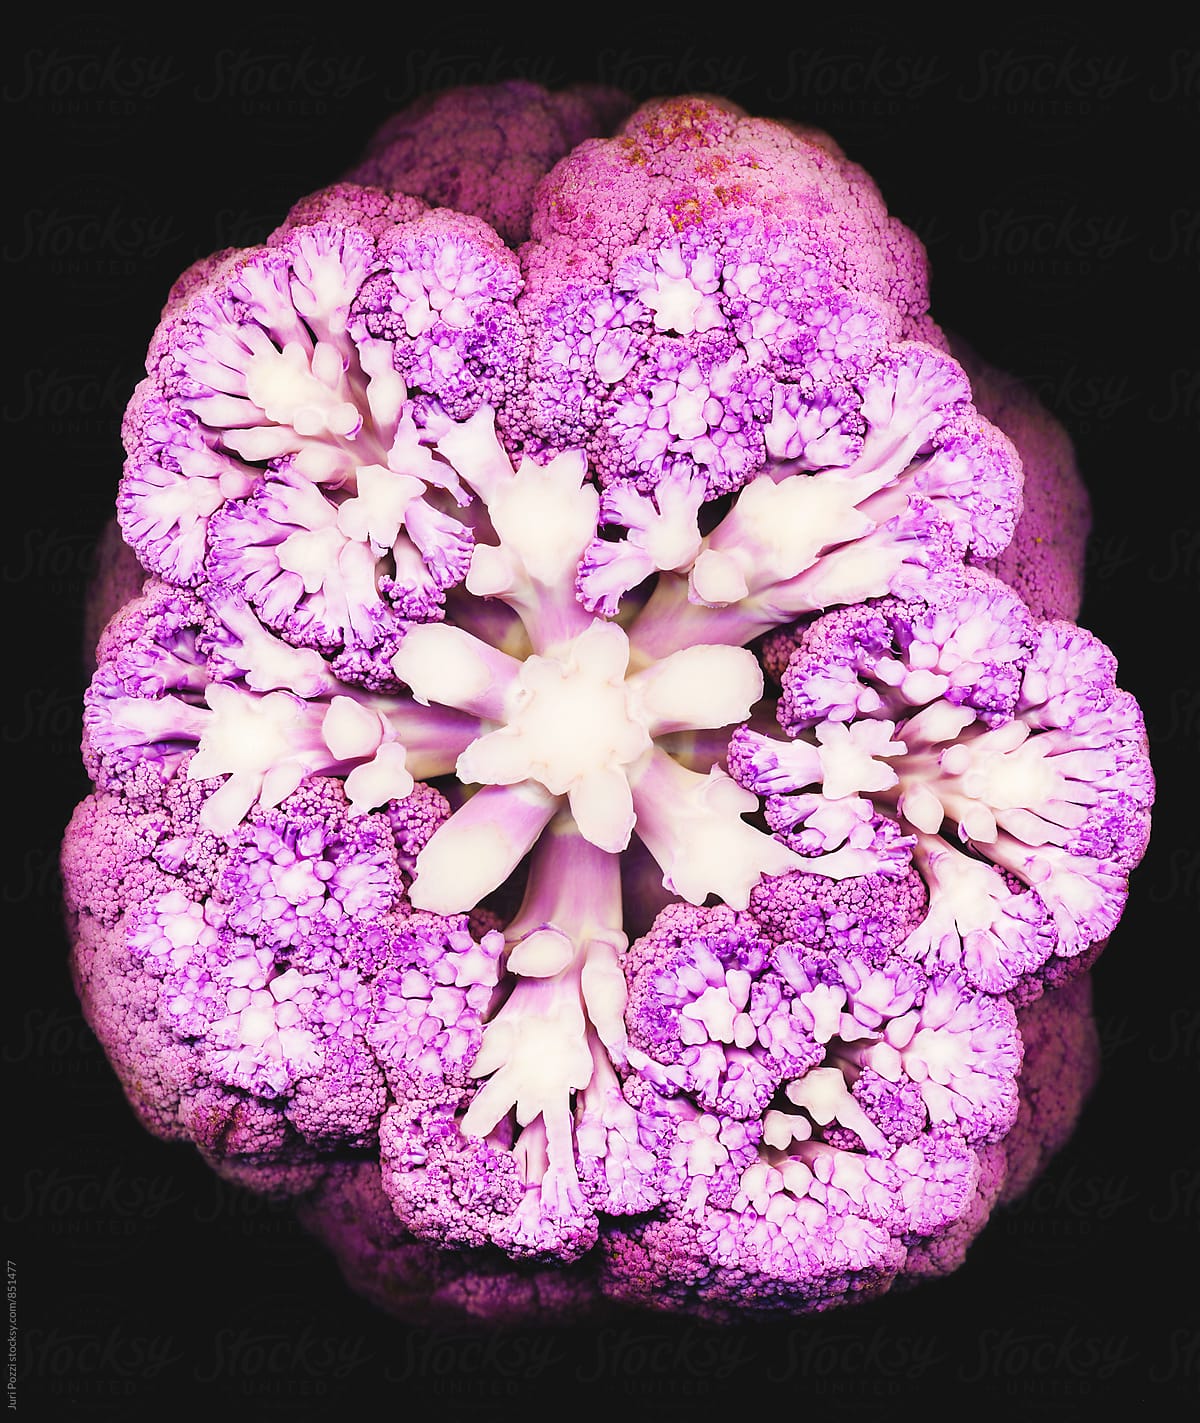 sliced purple cauliflower